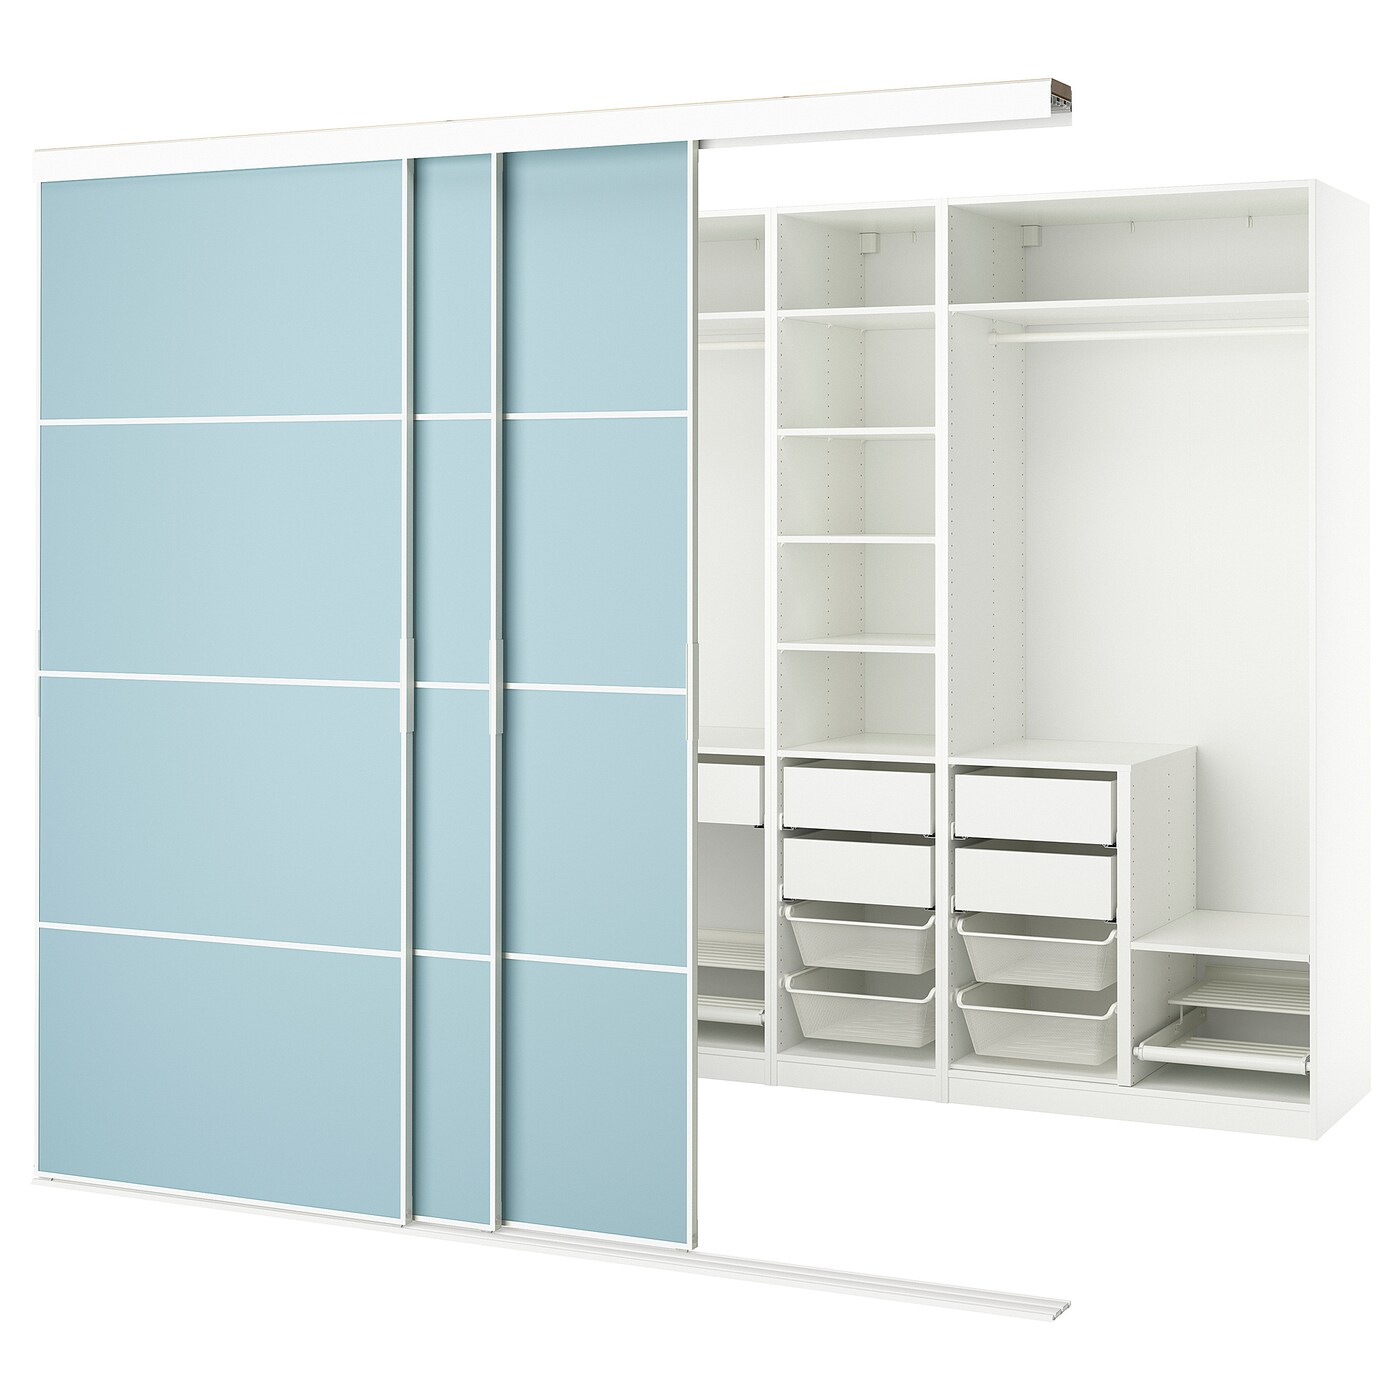 Шкаф - SKYTTA / PAX IKEA/ СКИТТА / ПАКС  ИКЕА, 240х276 см, белый/голубой